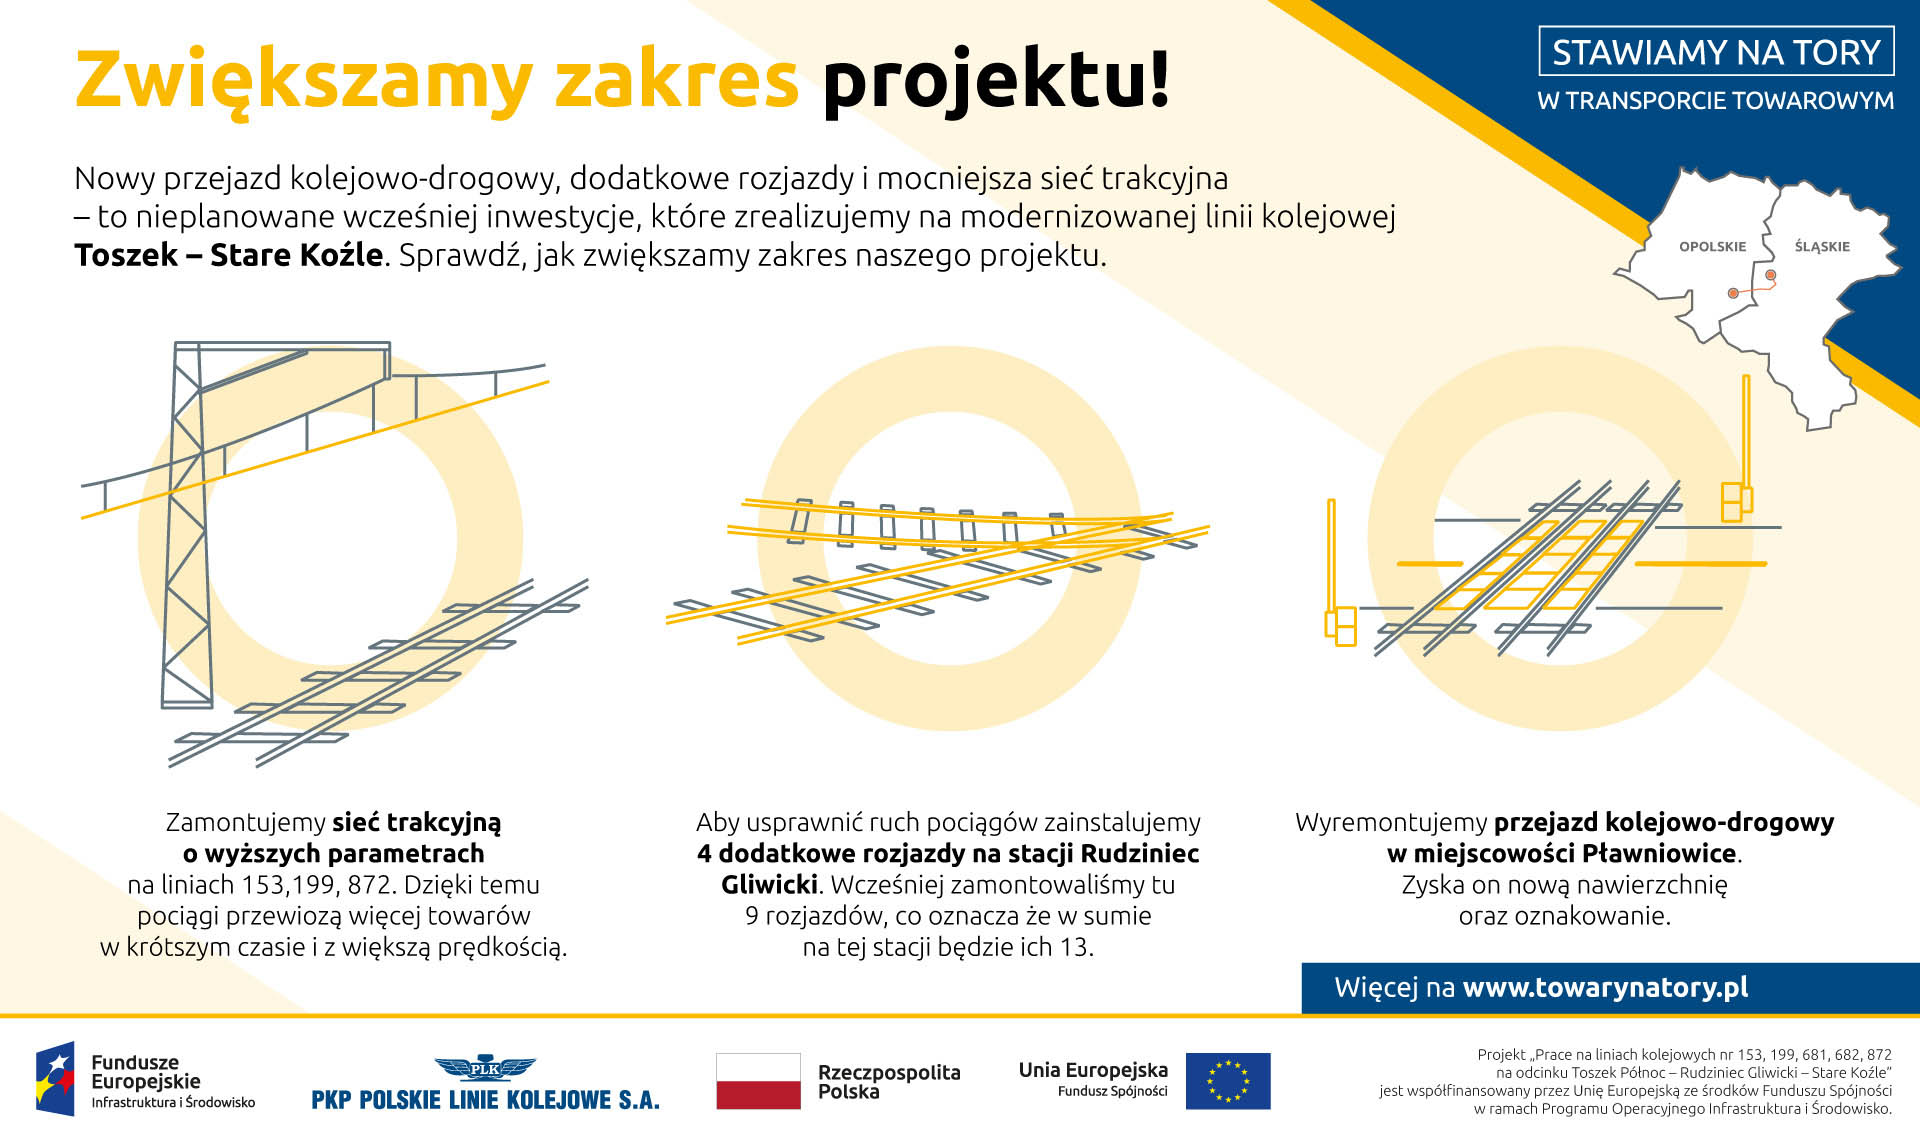 Infografika mówiąca o o zwiększeniu zakresu projektu. Została zamontowana sieć trakcyjna o wyższych parametrach, 4 dodatkowe rozjazdy w Rudzińcu Gliwickim, dodatkowo został wyremontowany przejazd kolejowo drogowy w miejscowości Pławniowice.